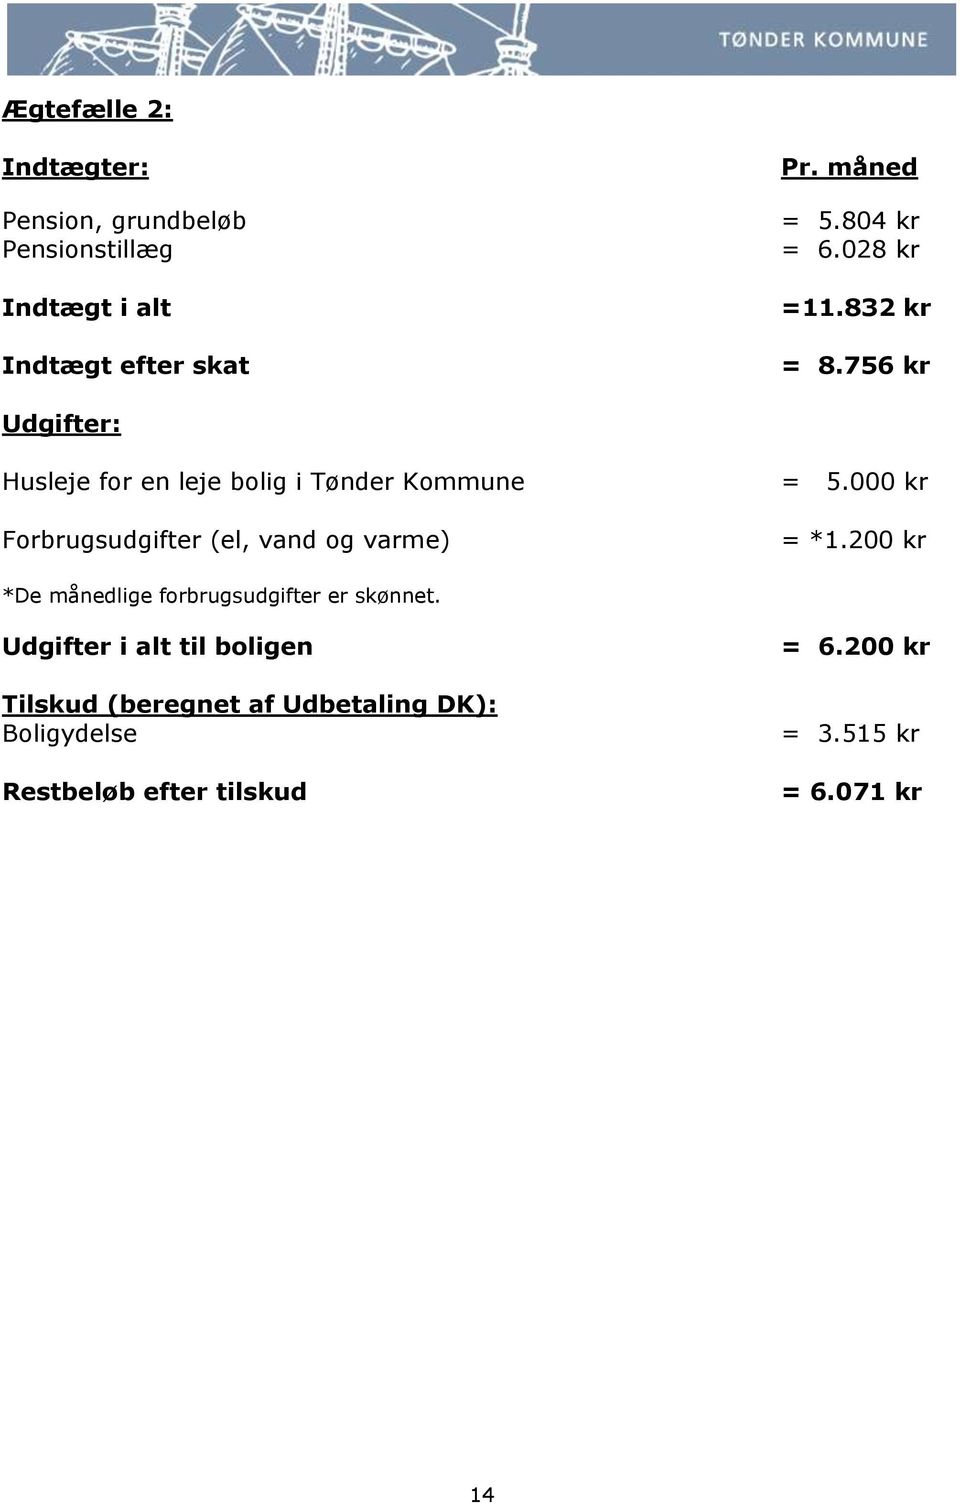 756 kr Udgifter: Husleje for en leje bolig i Tønder Kommune Forbrugsudgifter (el, vand og varme) = 5.